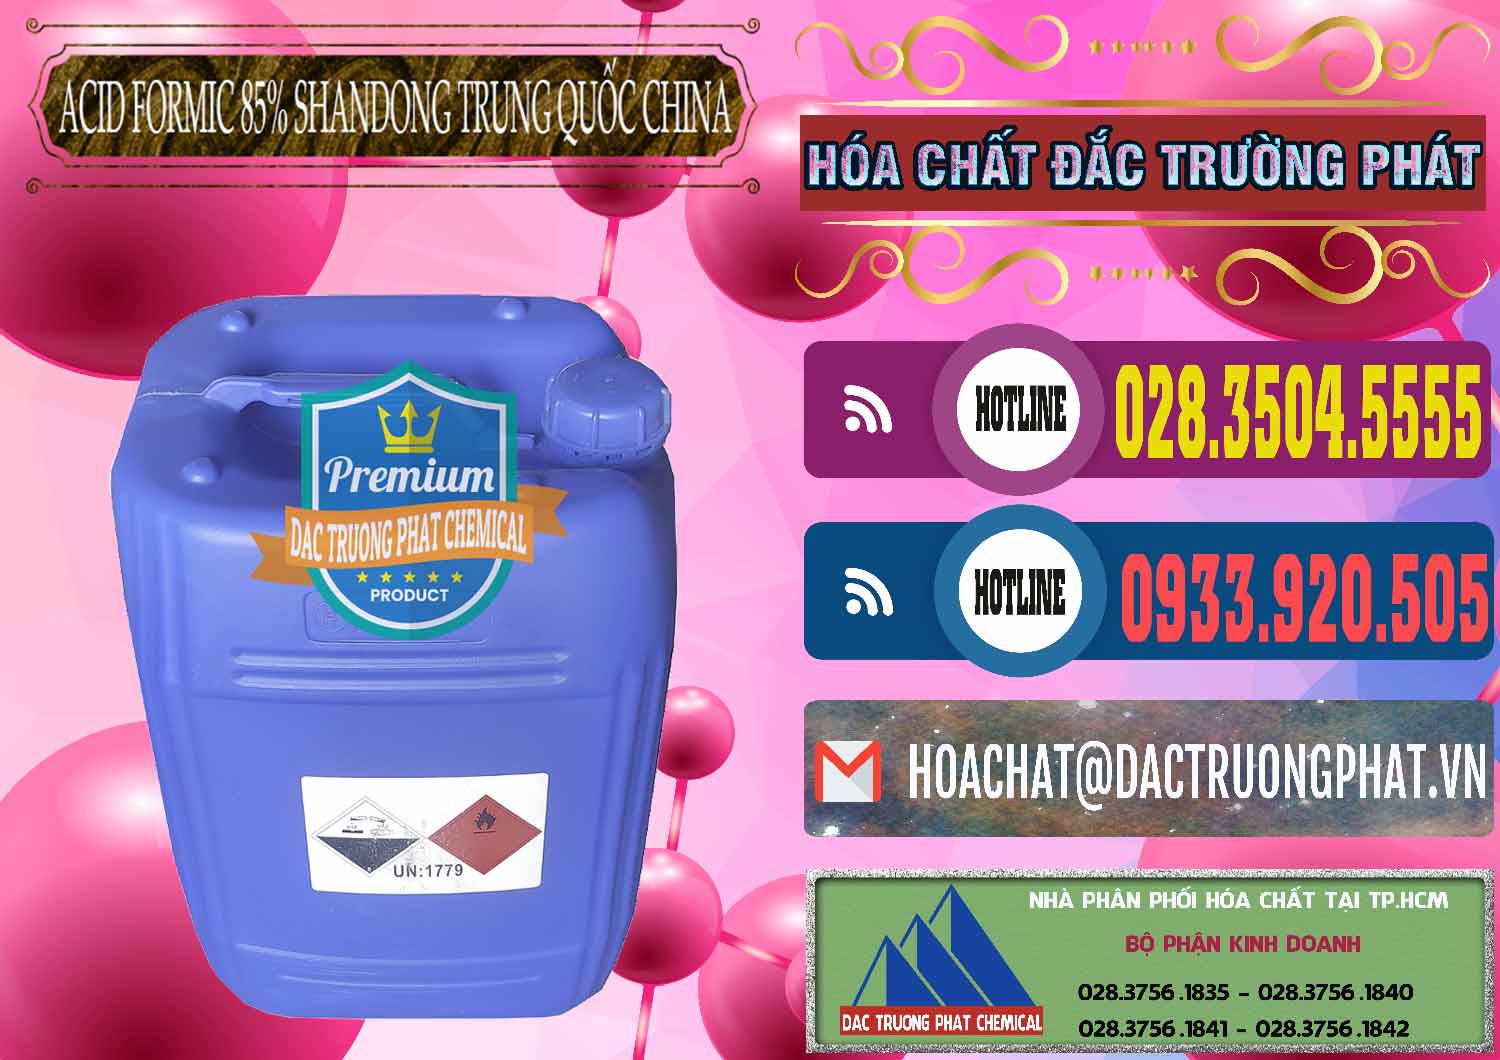 Bán _ cung cấp Acid Formic - Axit Formic 85% Shandong Trung Quốc China - 0235 - Công ty cung cấp ( phân phối ) hóa chất tại TP.HCM - muabanhoachat.com.vn